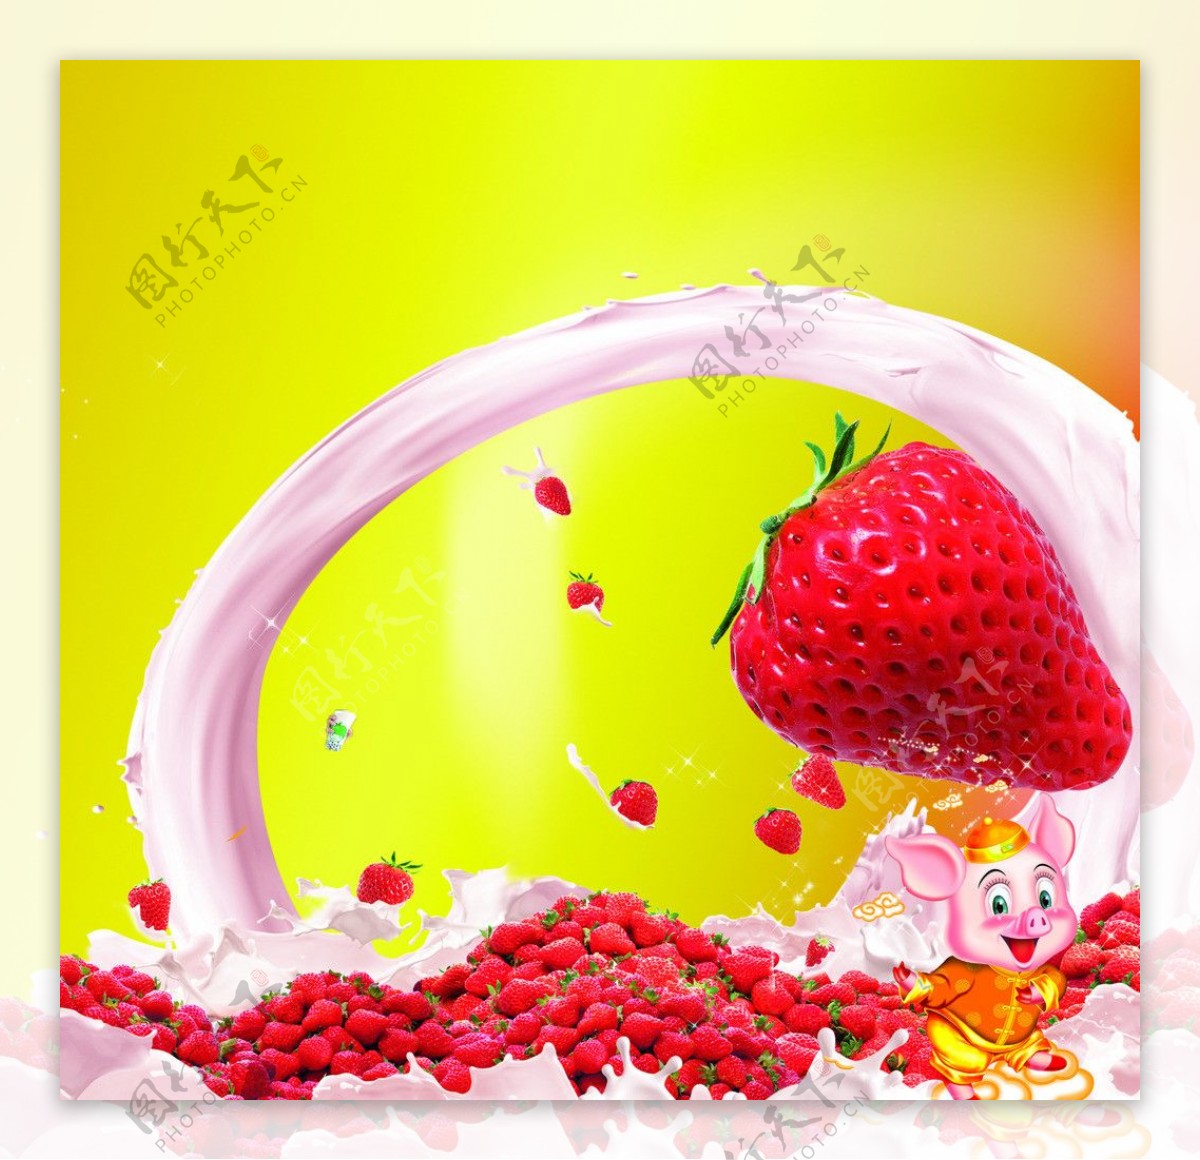 草莓奶茶图片